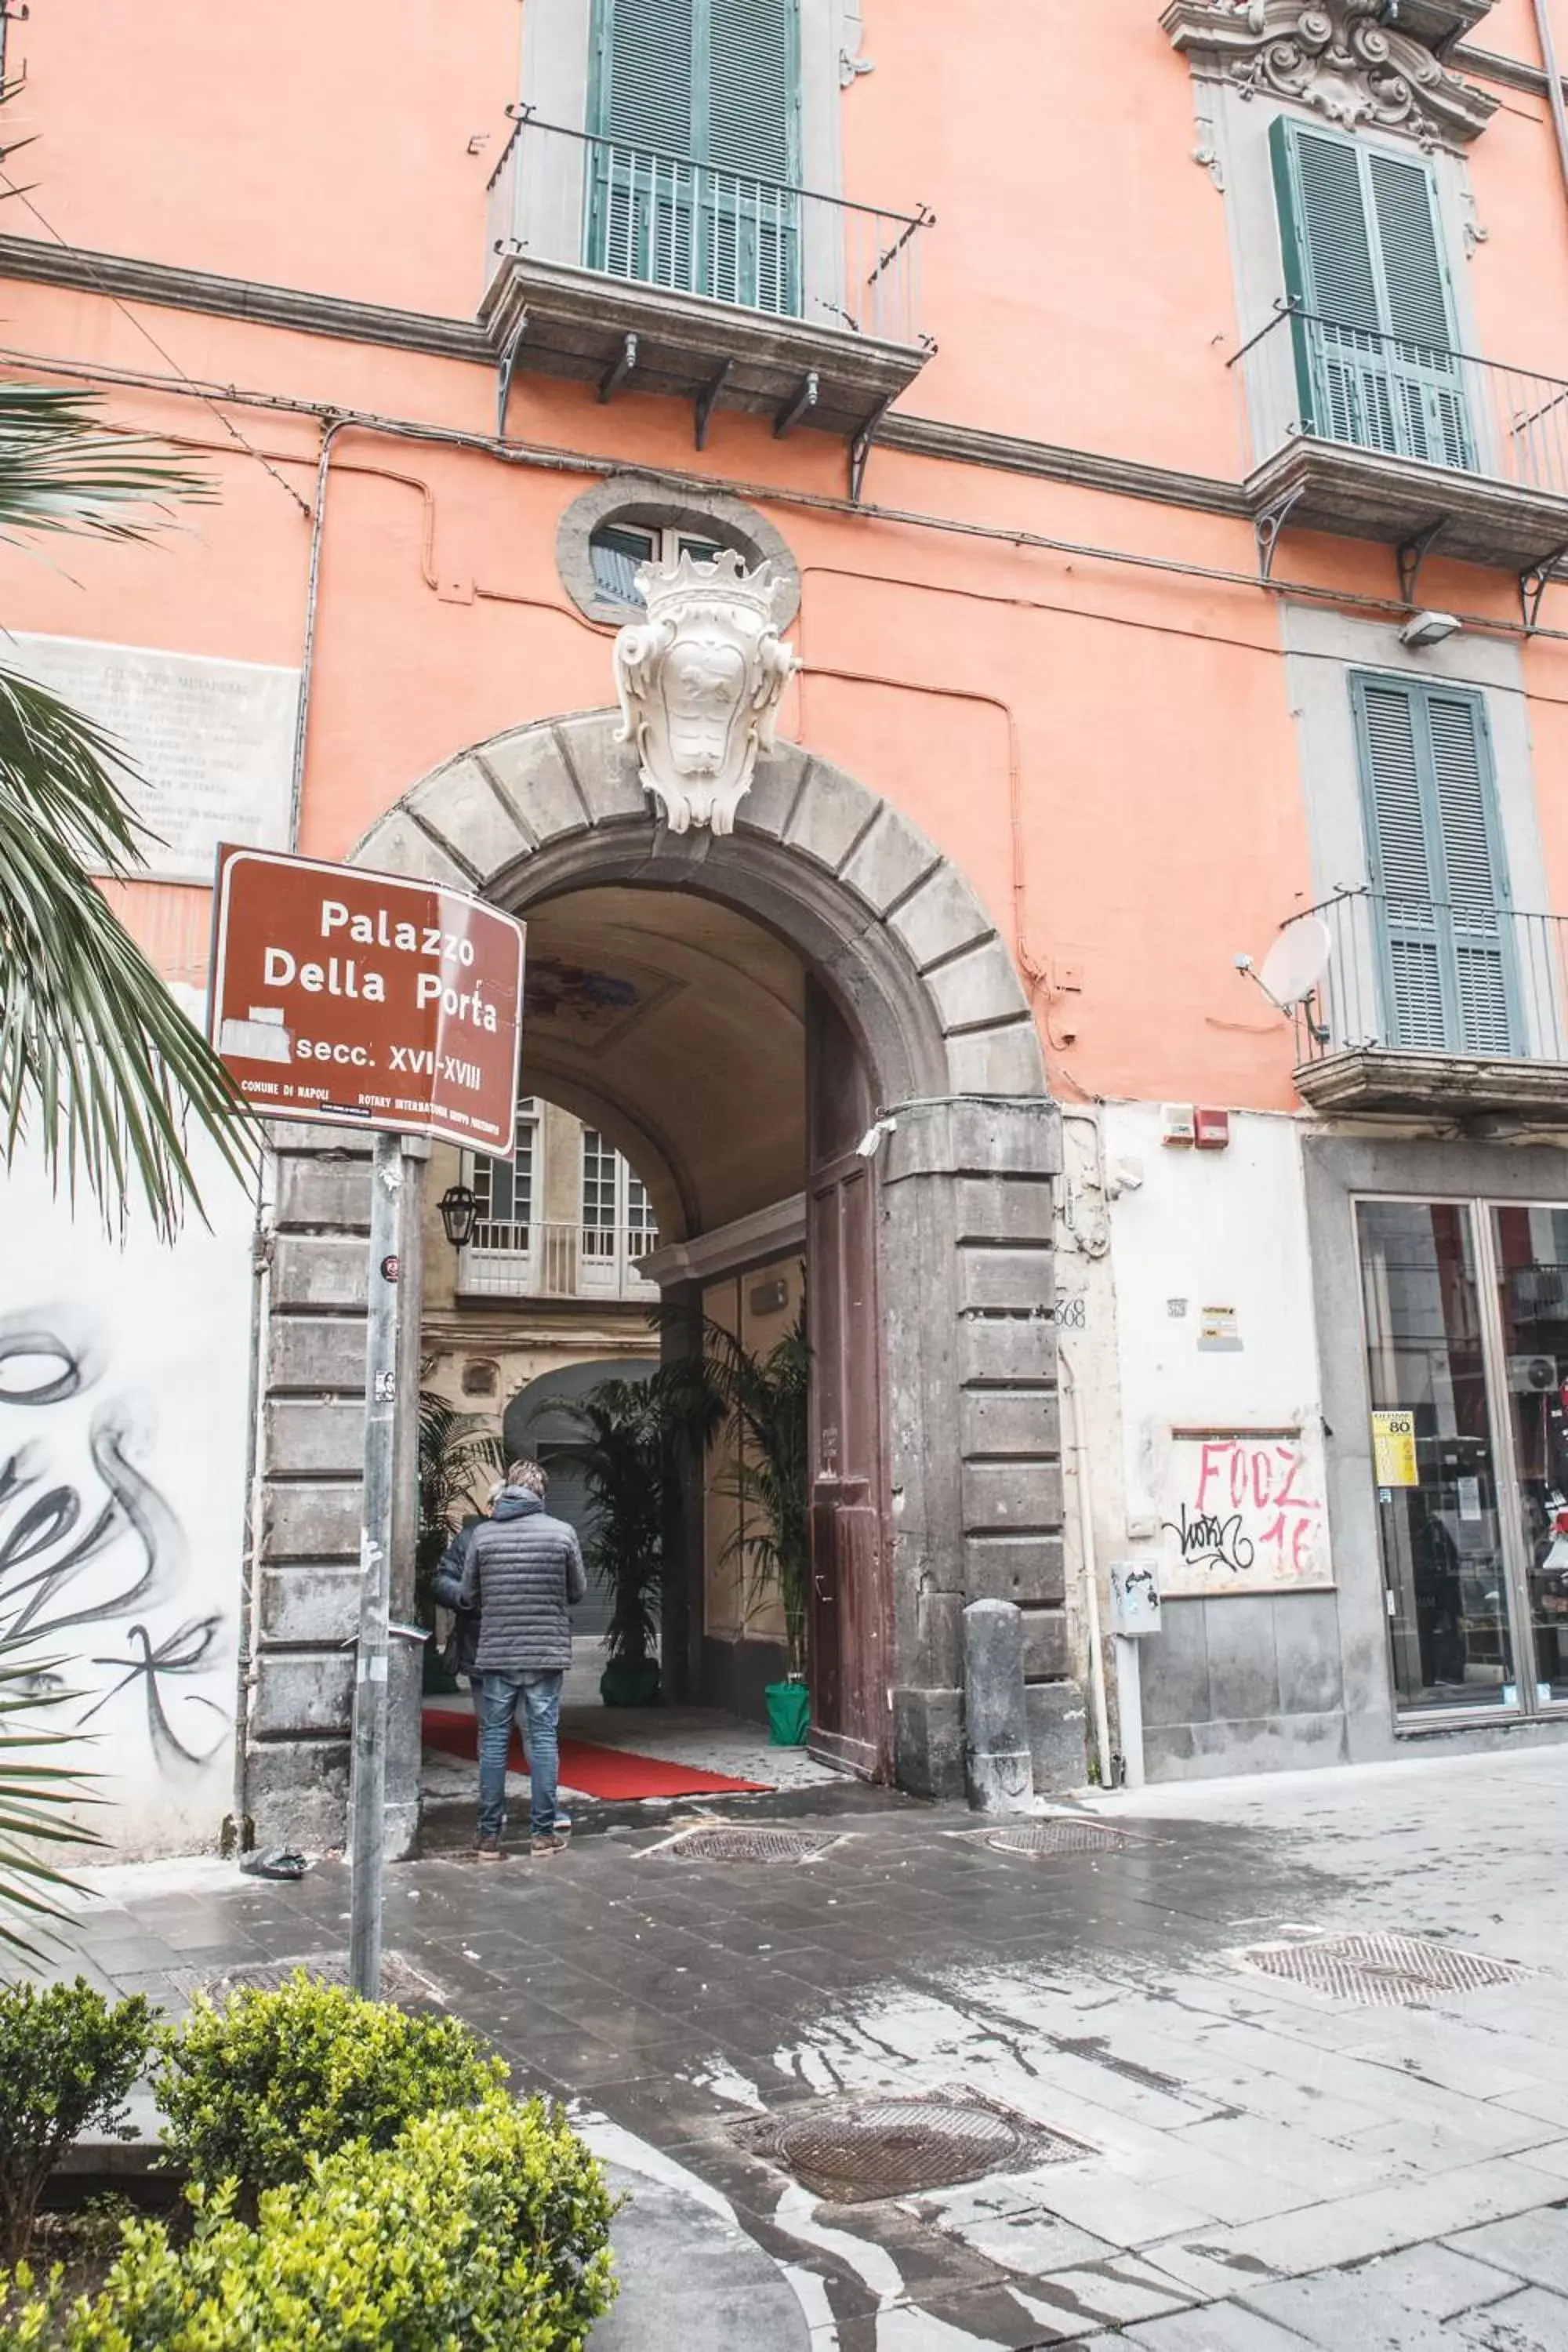 Facade/entrance in Relais Della Porta